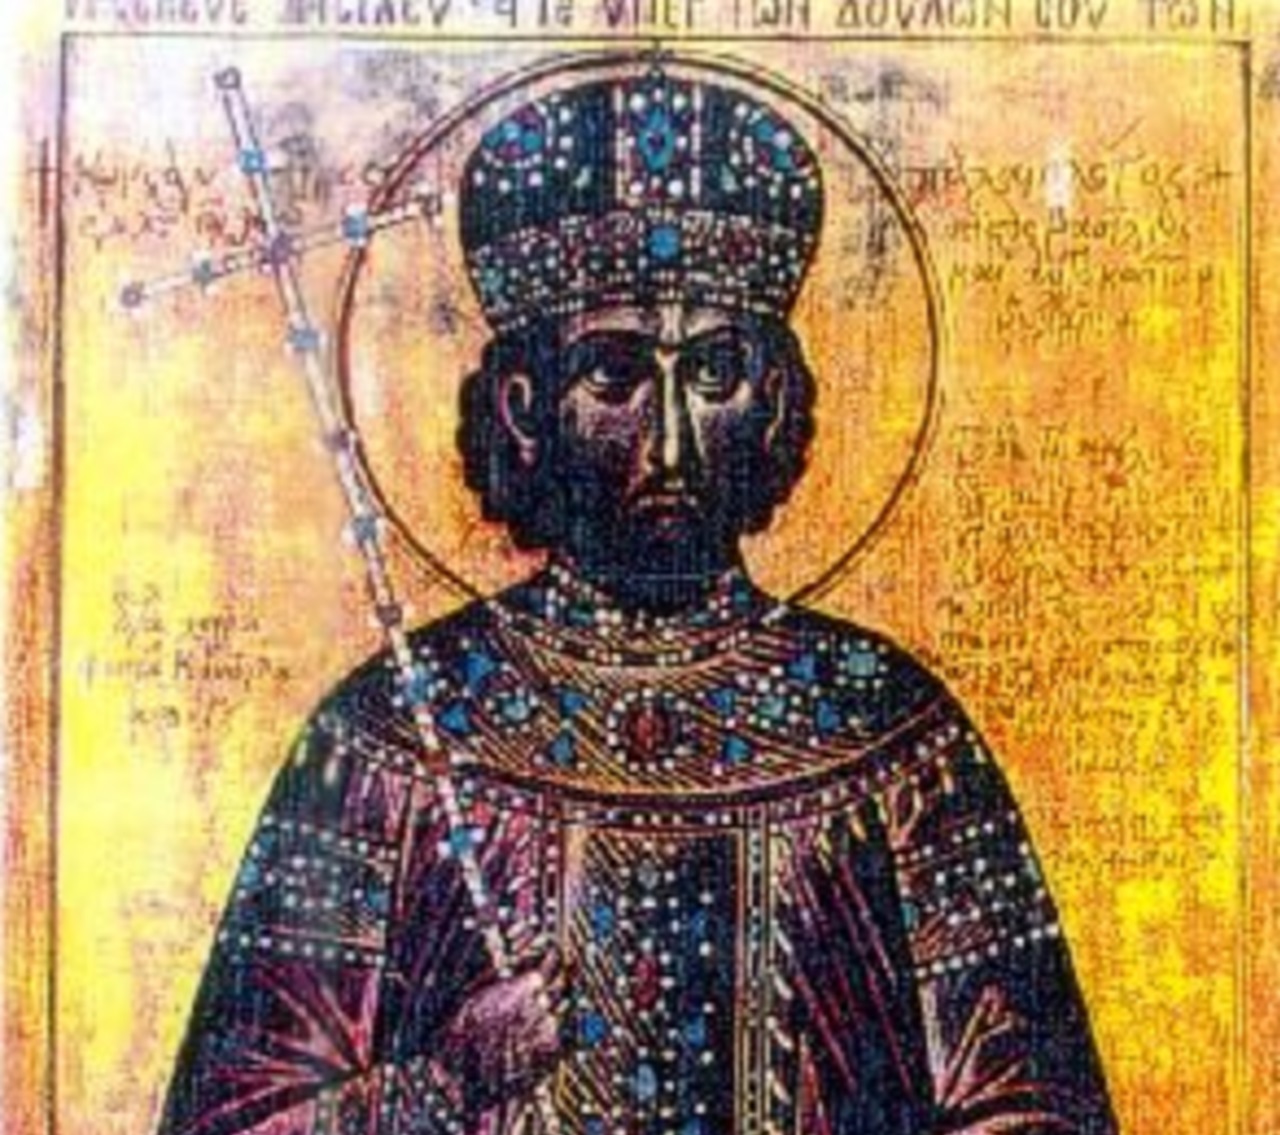 Costantino XI, l'ultimo imperatore romano, morto il 29 maggio 1453